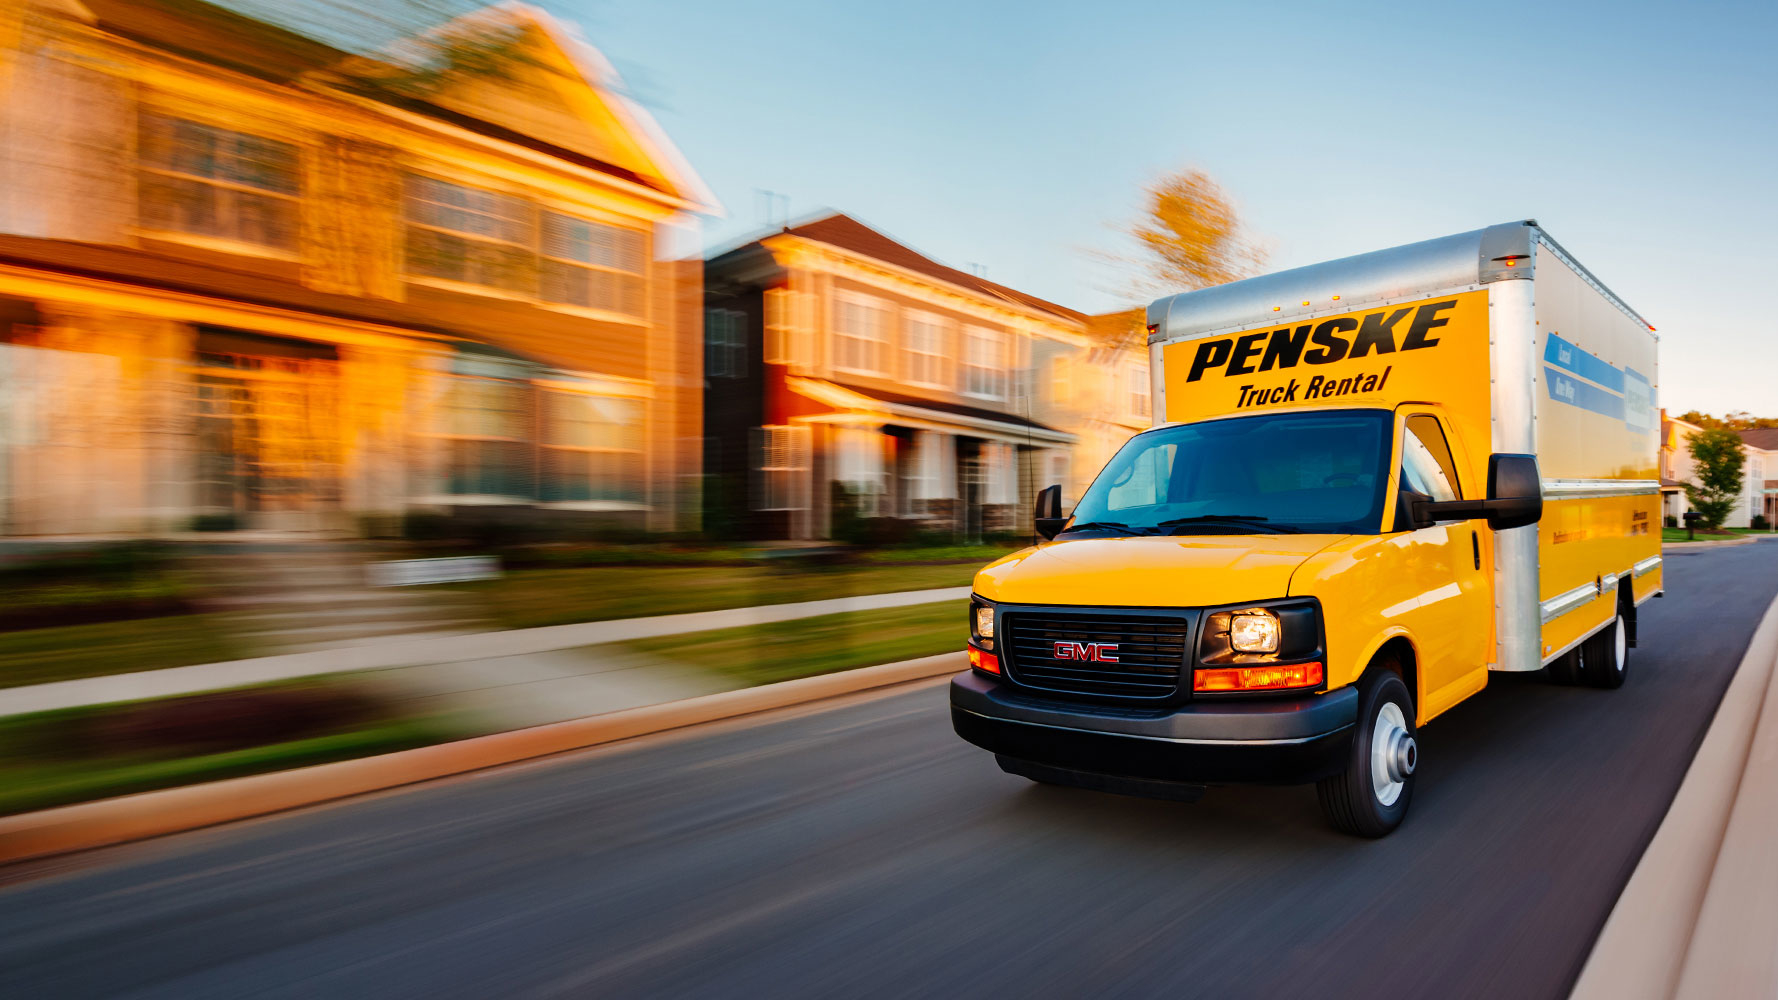 Penske Truck Rental - Truck Rental & Leasing